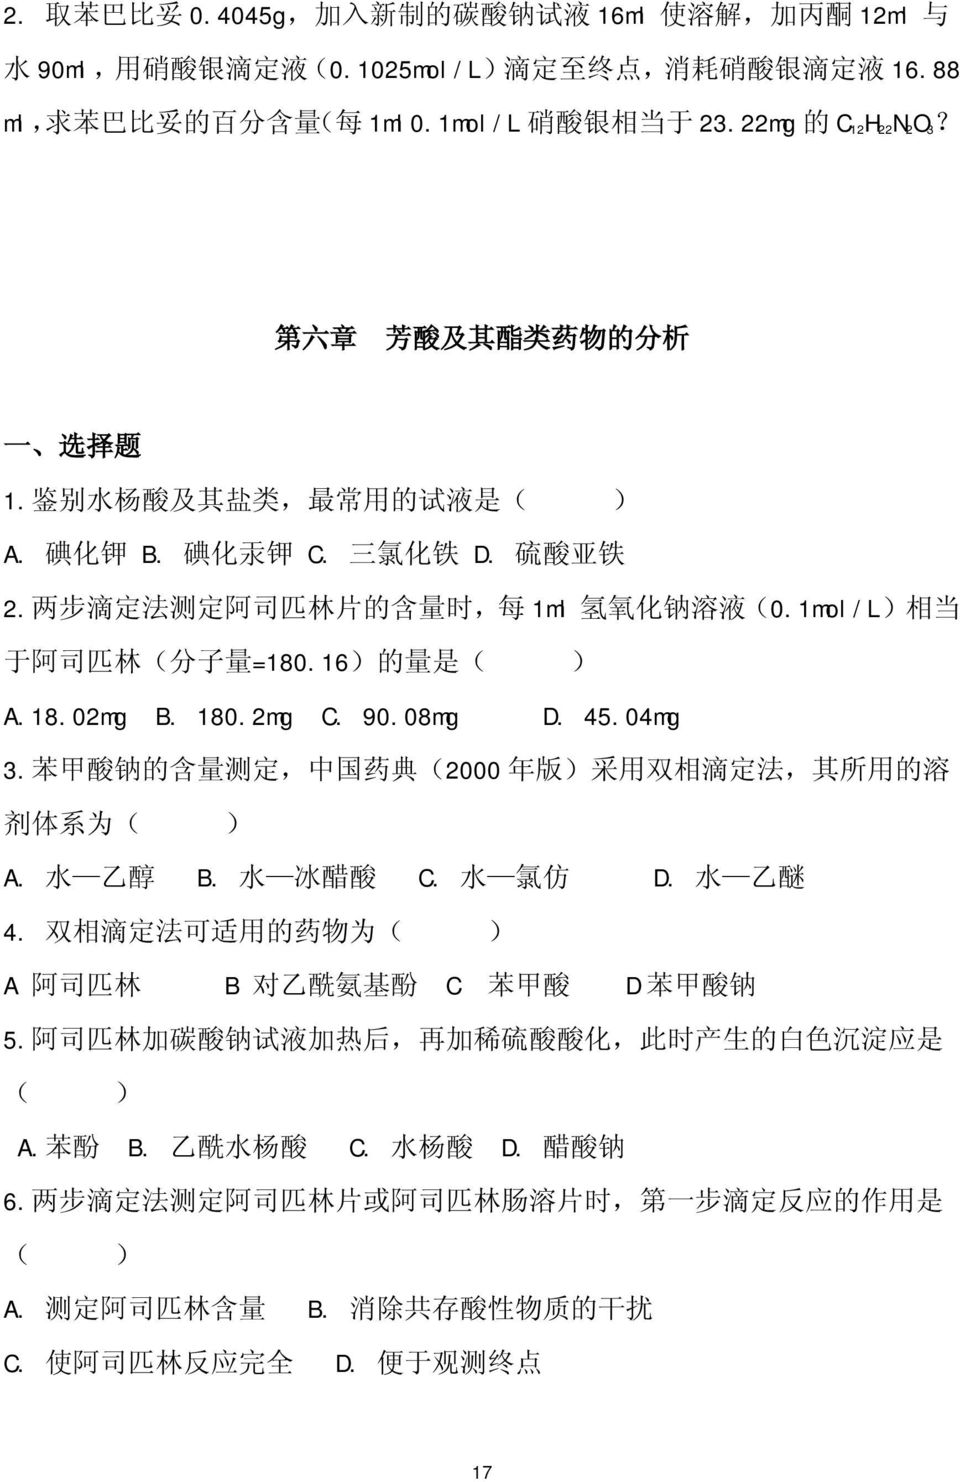 1mol/L) 相 当 于 阿 司 匹 林 ( 分 子 量 =180.16) 的 量 是 ( ) A.18.02mg B. 180.2mg C. 90.08mg D. 45.04mg 3. 苯 甲 酸 钠 的 含 量 测 定, 中 国 药 典 (2000 年 版 ) 采 用 双 相 滴 定 法, 其 所 用 的 溶 剂 体 系 为 ( ) A. 水 乙 醇 B. 水 冰 醋 酸 C.